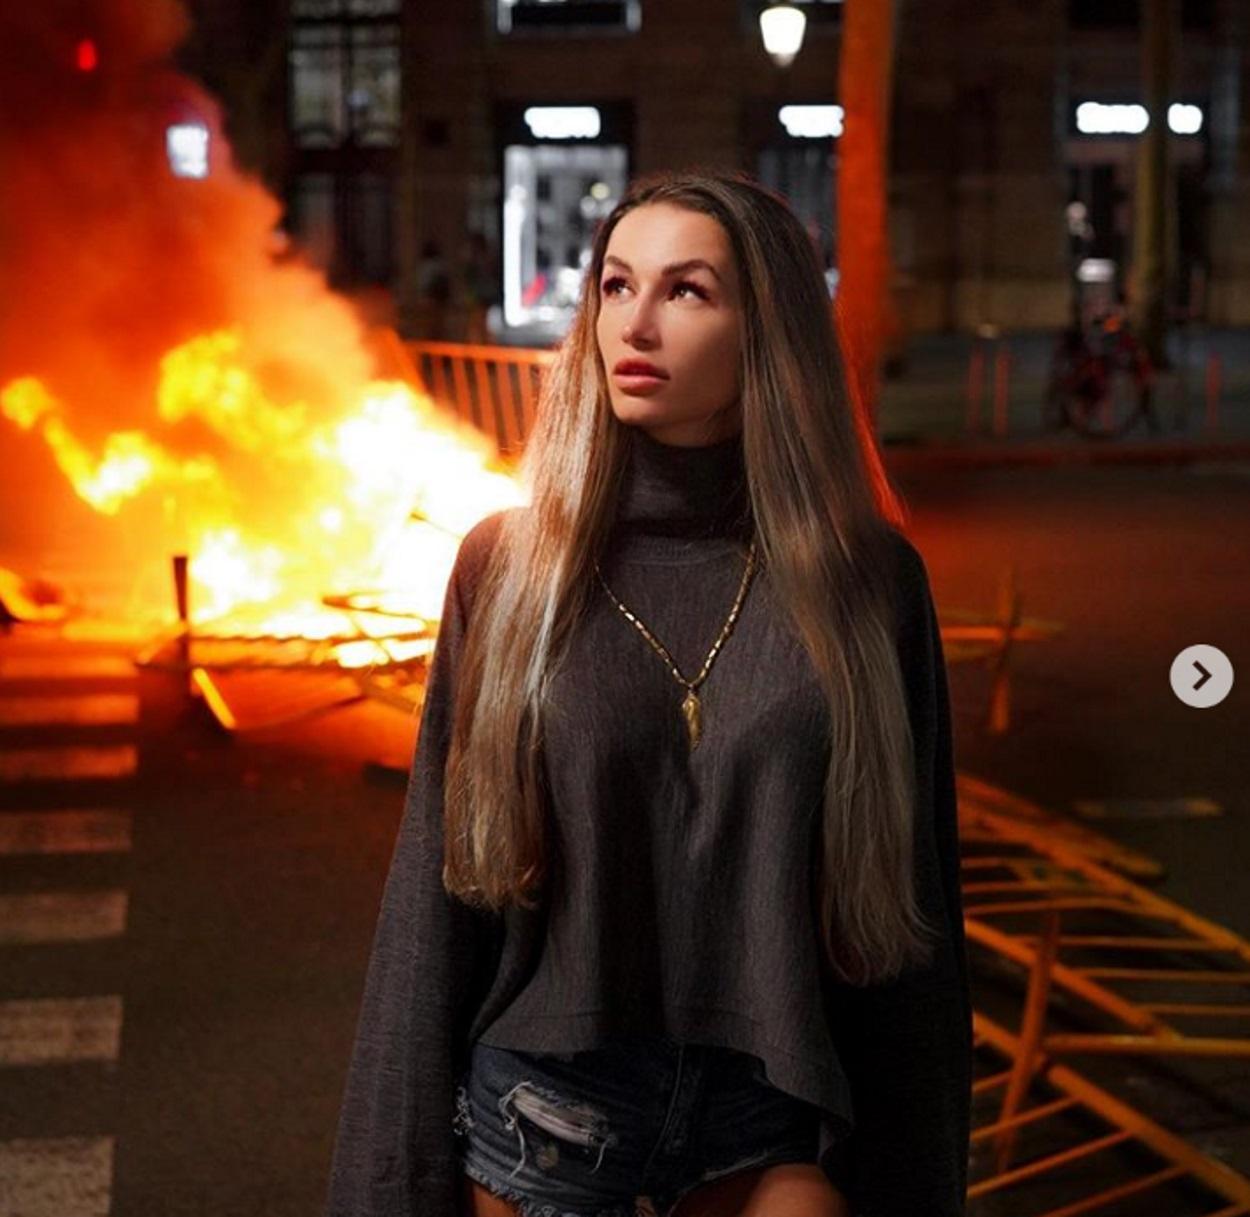 Una instagrame aprovecha las llamas en Cataluña para hacerse una fotografía